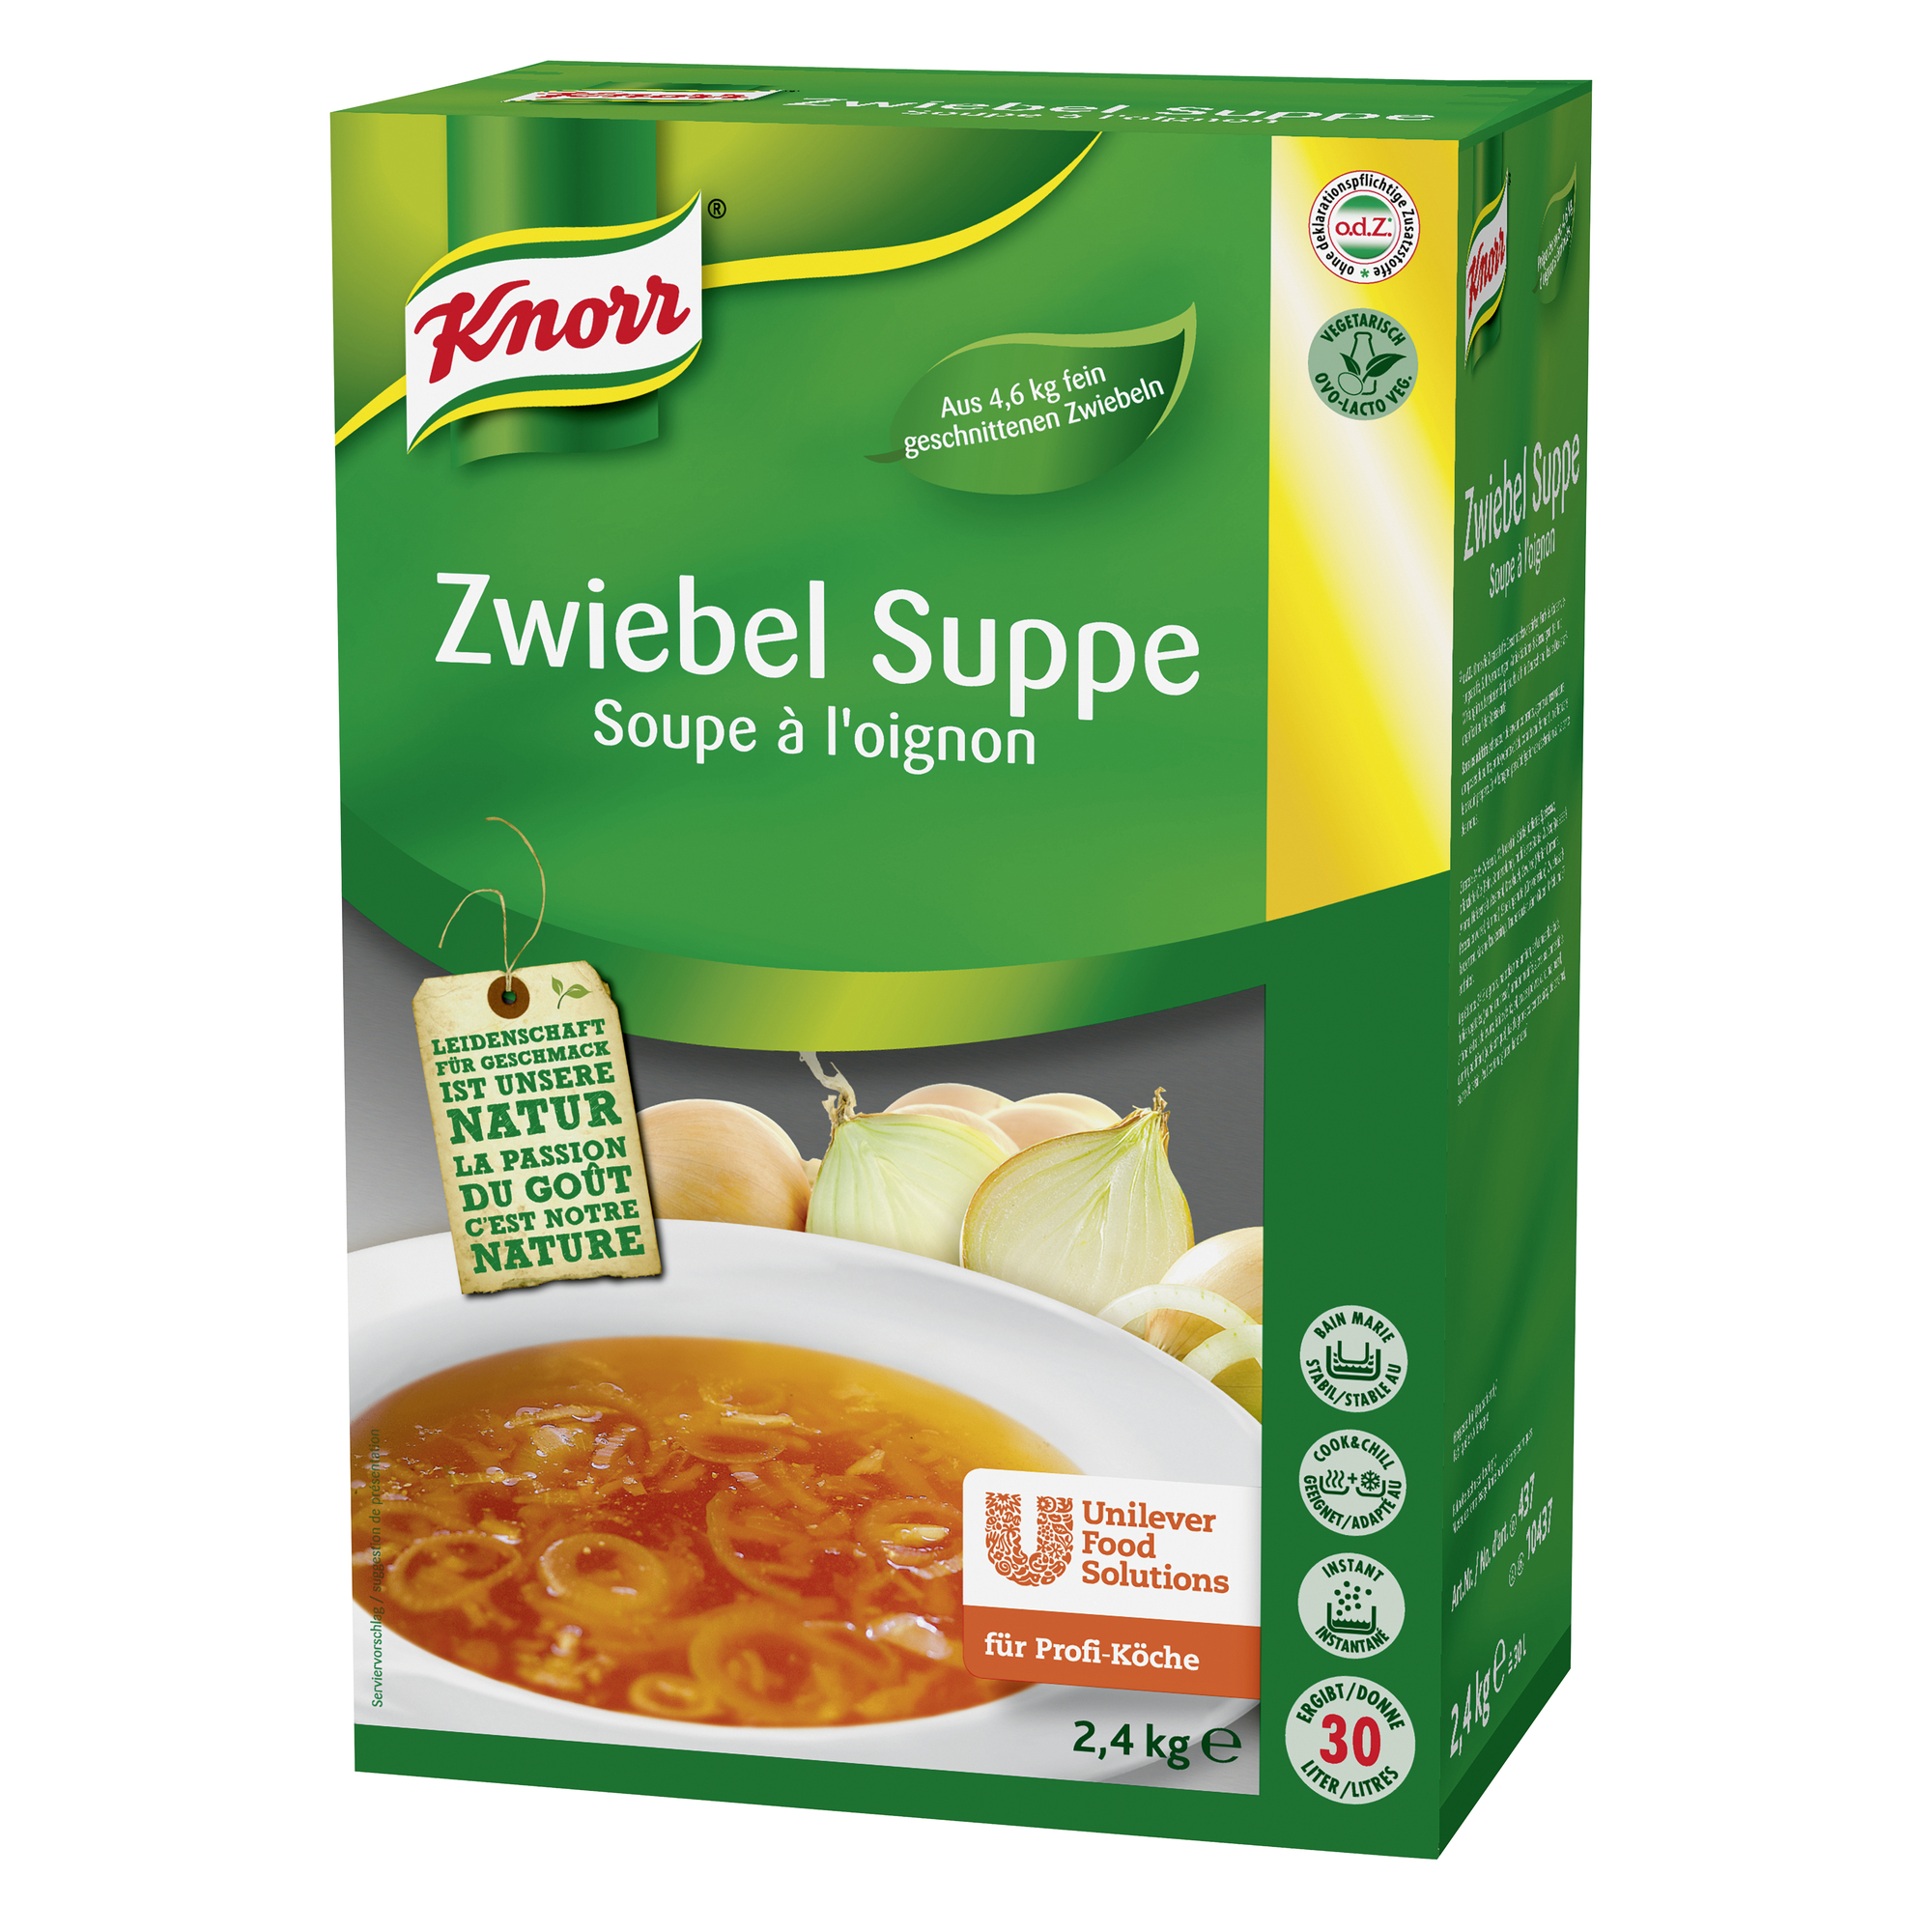 Zwiebel Suppe 2400g